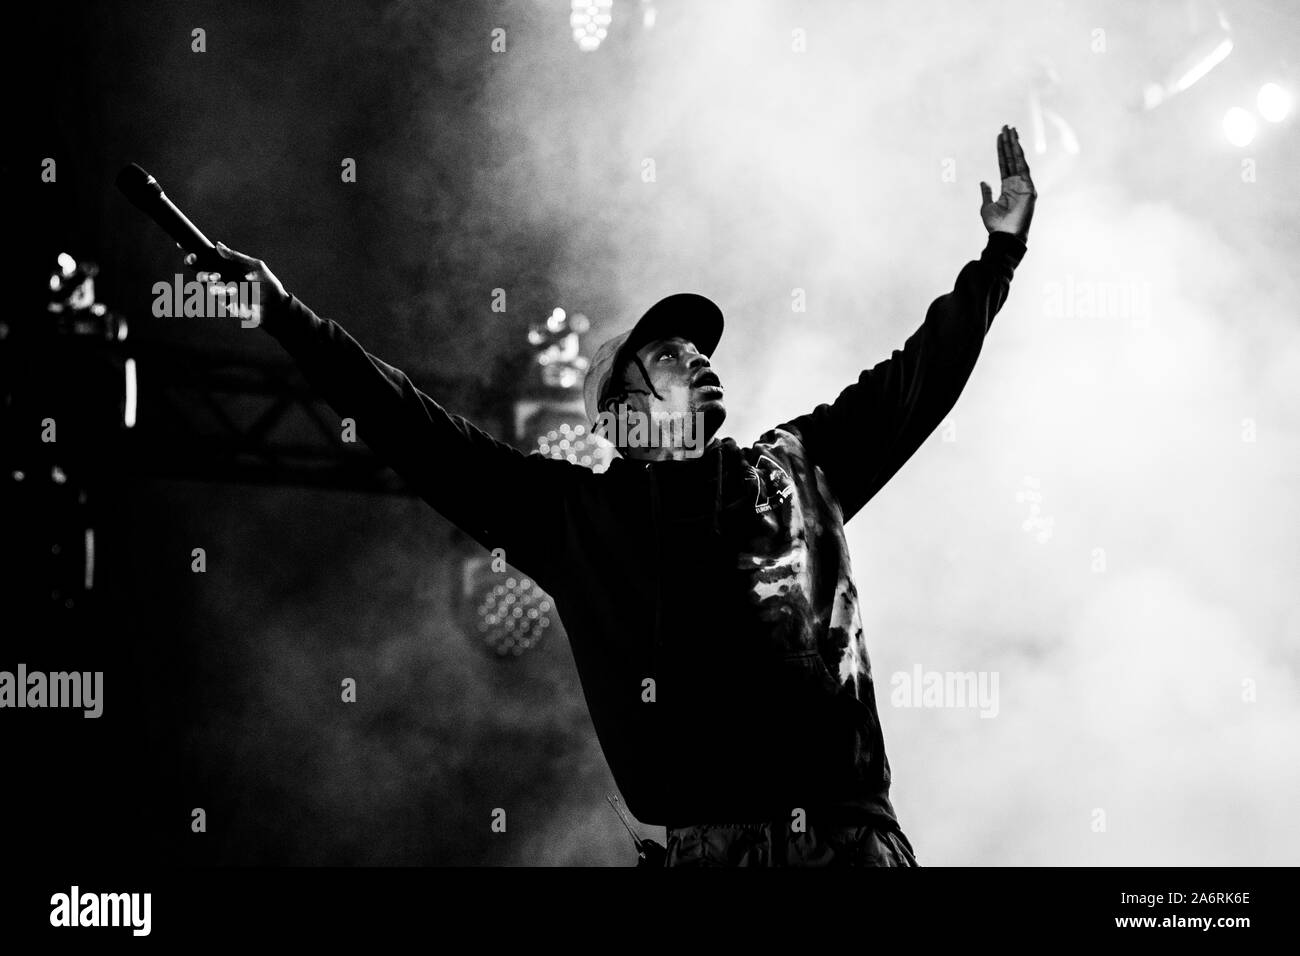 Roskilde, Danimarca. 05th, luglio 2019. Il rapper americano e paroliere Travis Scott esegue un concerto dal vivo durante il danese music festival Roskilde Festival 2019. (Photo credit: Gonzales foto - Lasse Lagoni). Foto Stock